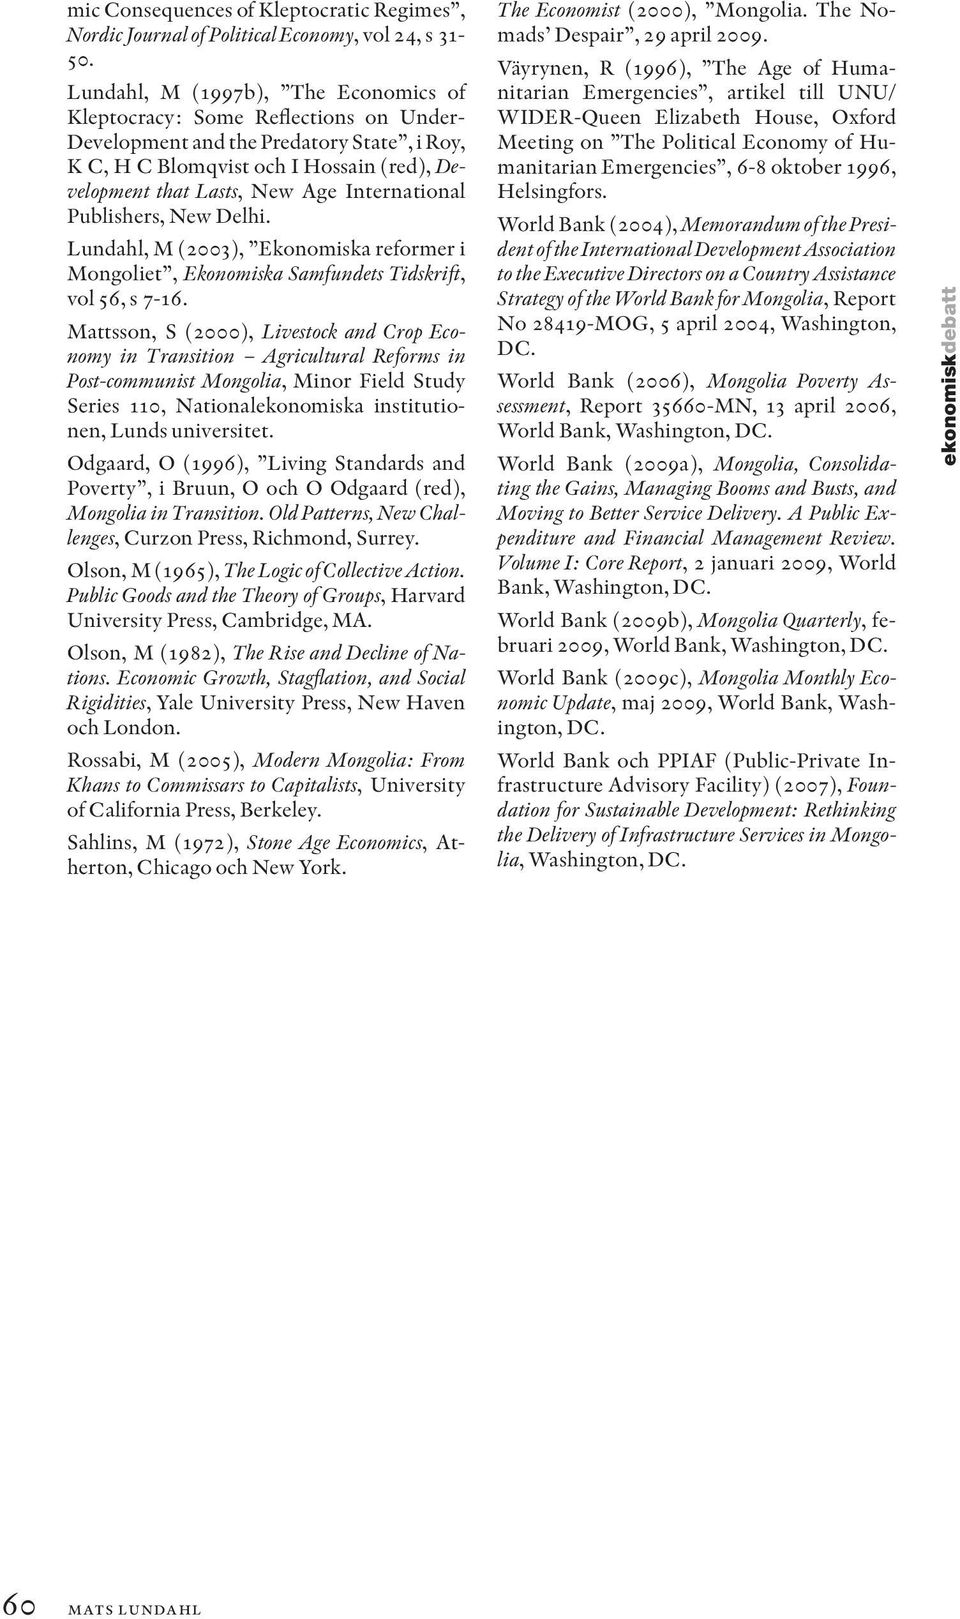 International Publishers, New Delhi. Lundahl, M (2003), Ekonomiska reformer i Mongoliet, Ekonomiska Samfundets Tidskrift, vol 56, s 7-16.